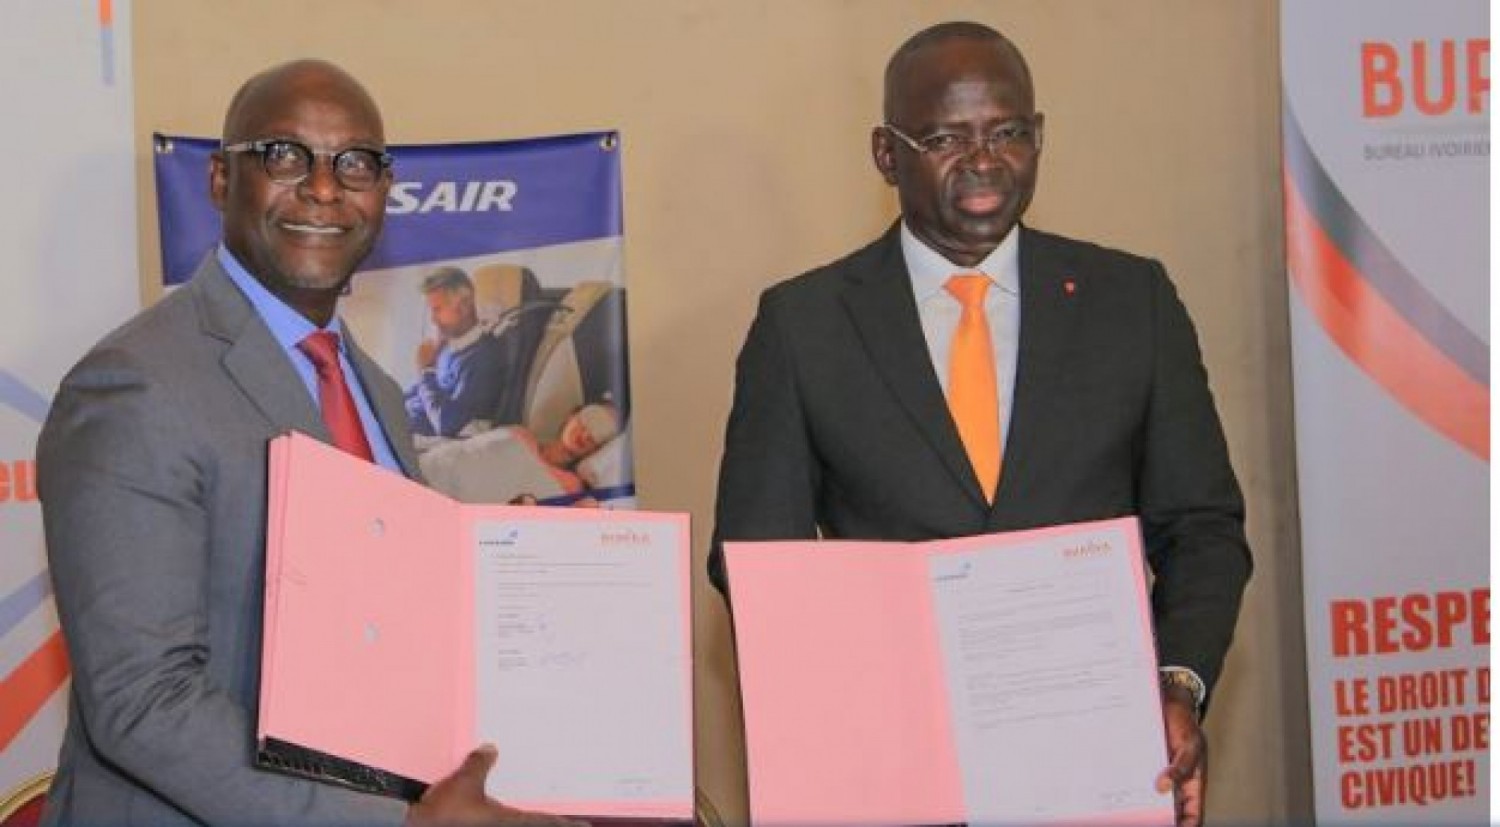 Côte d'Ivoire : Bonne nouvelle pour les acteurs culturels, une compagnie aérienne s'engage à faciliter  leurs voyages professionnels et privés